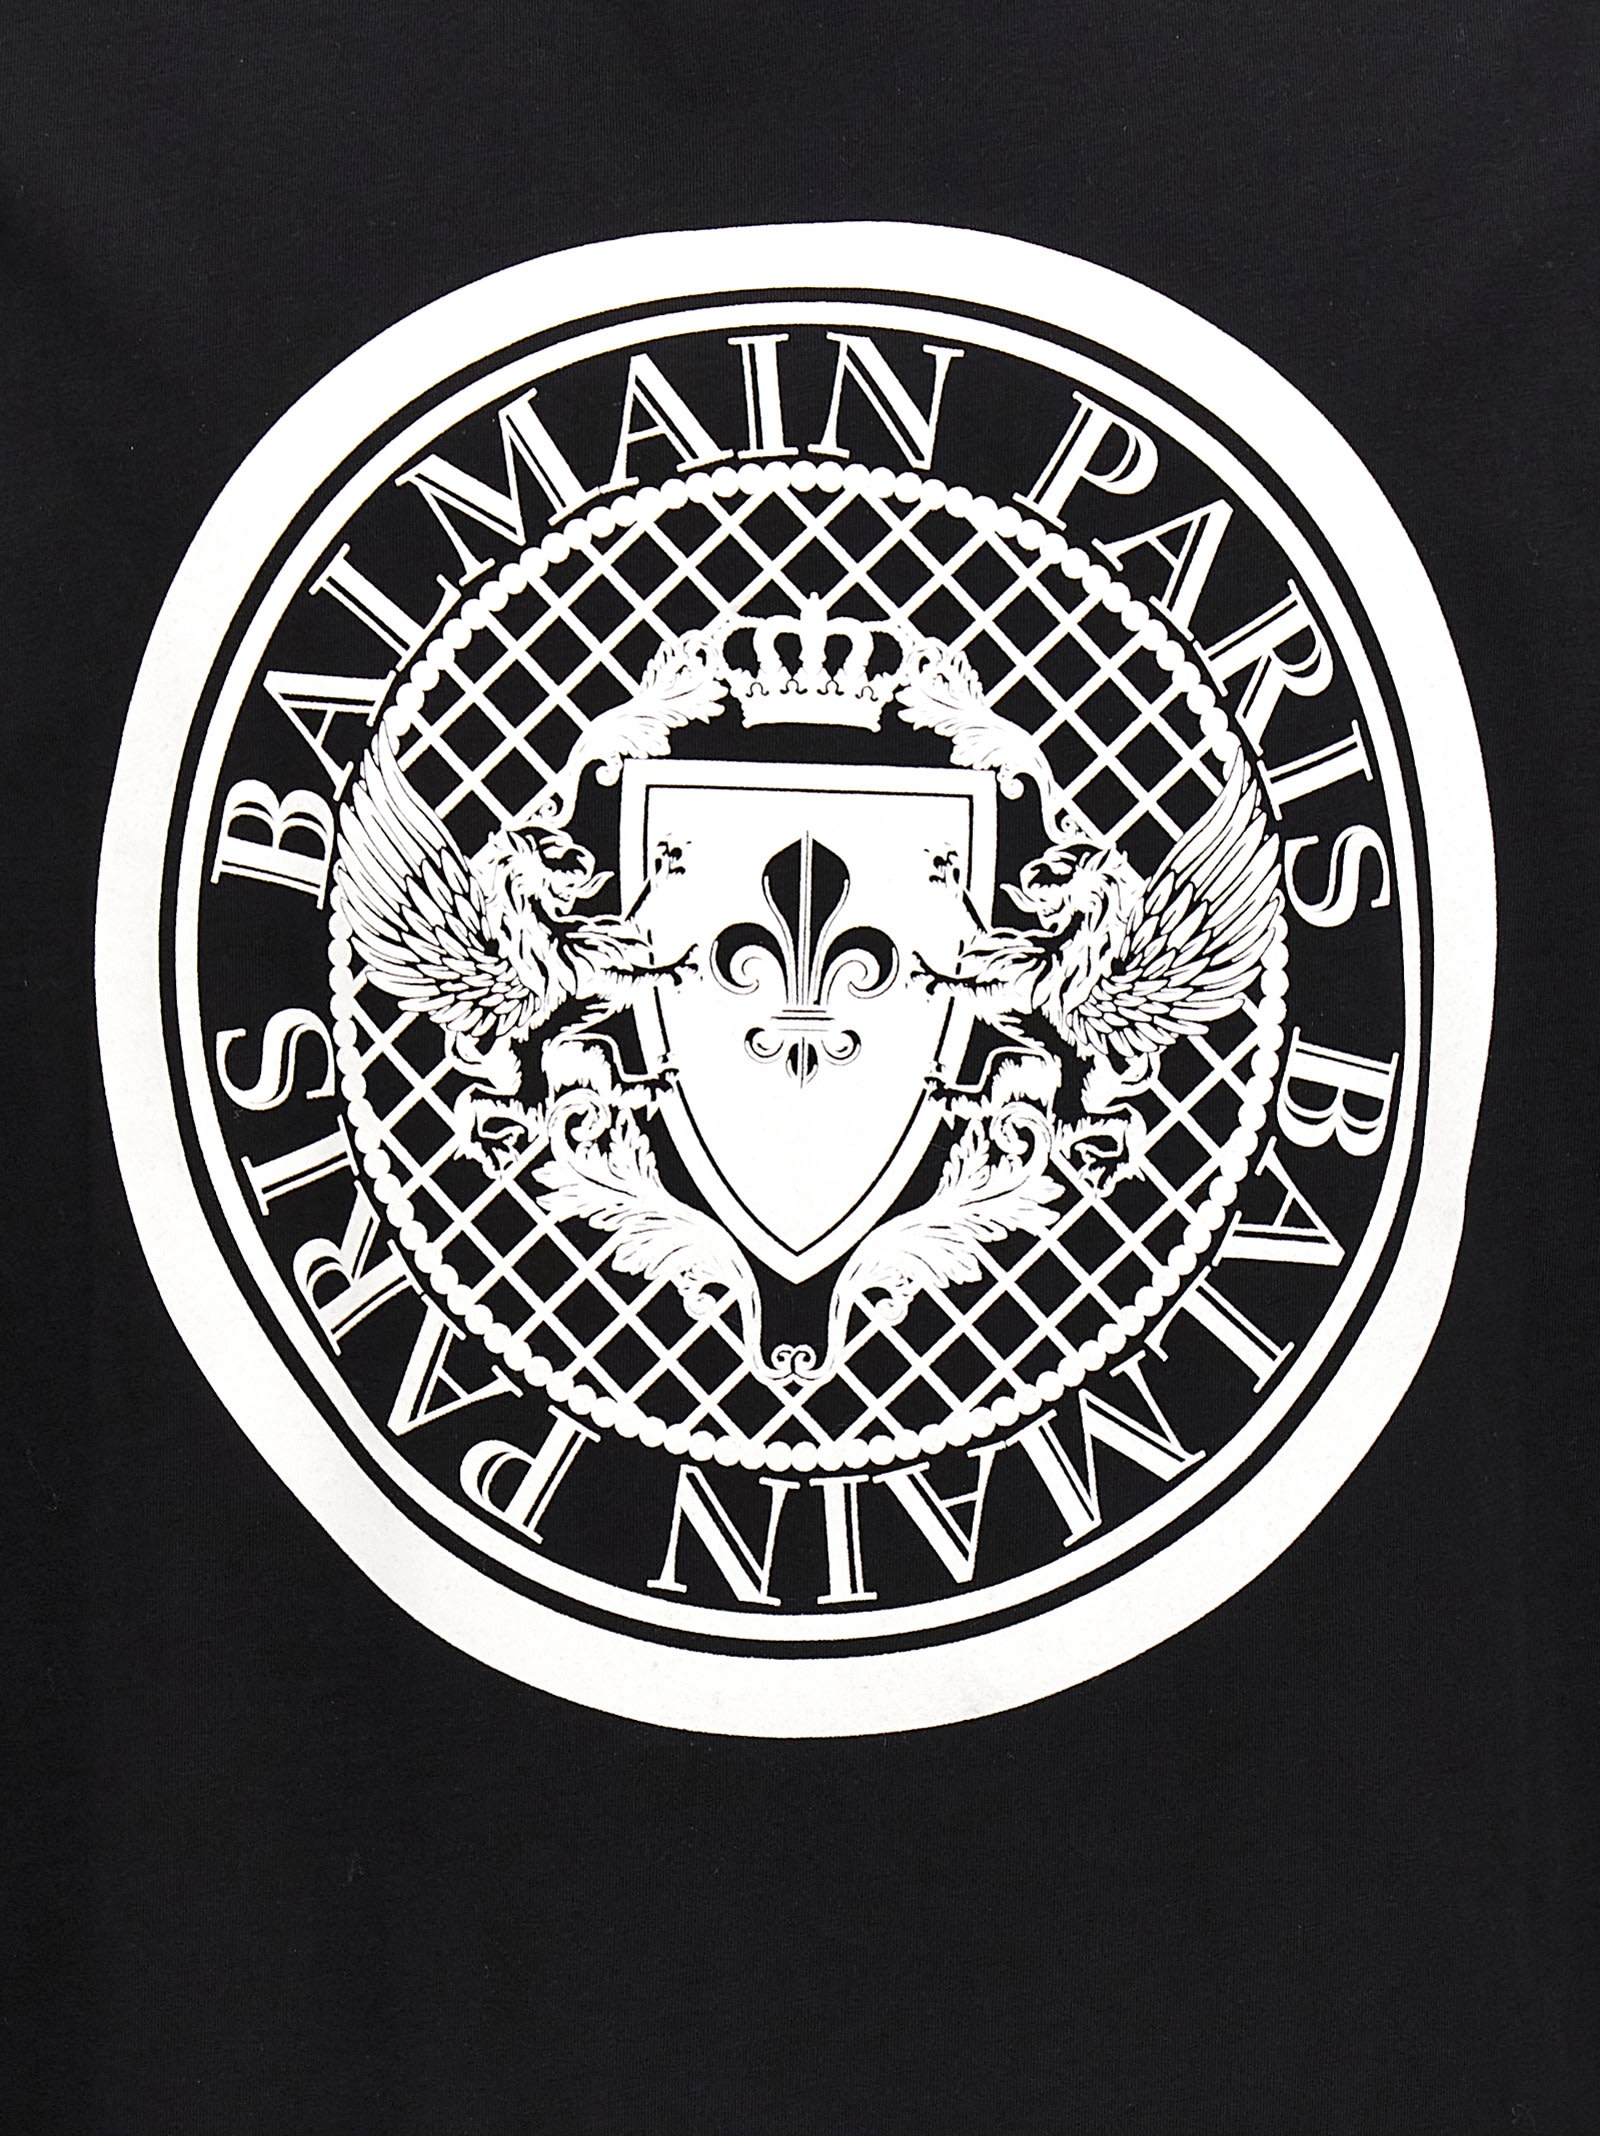 Shop Balmain Coin T-shirt In White/black